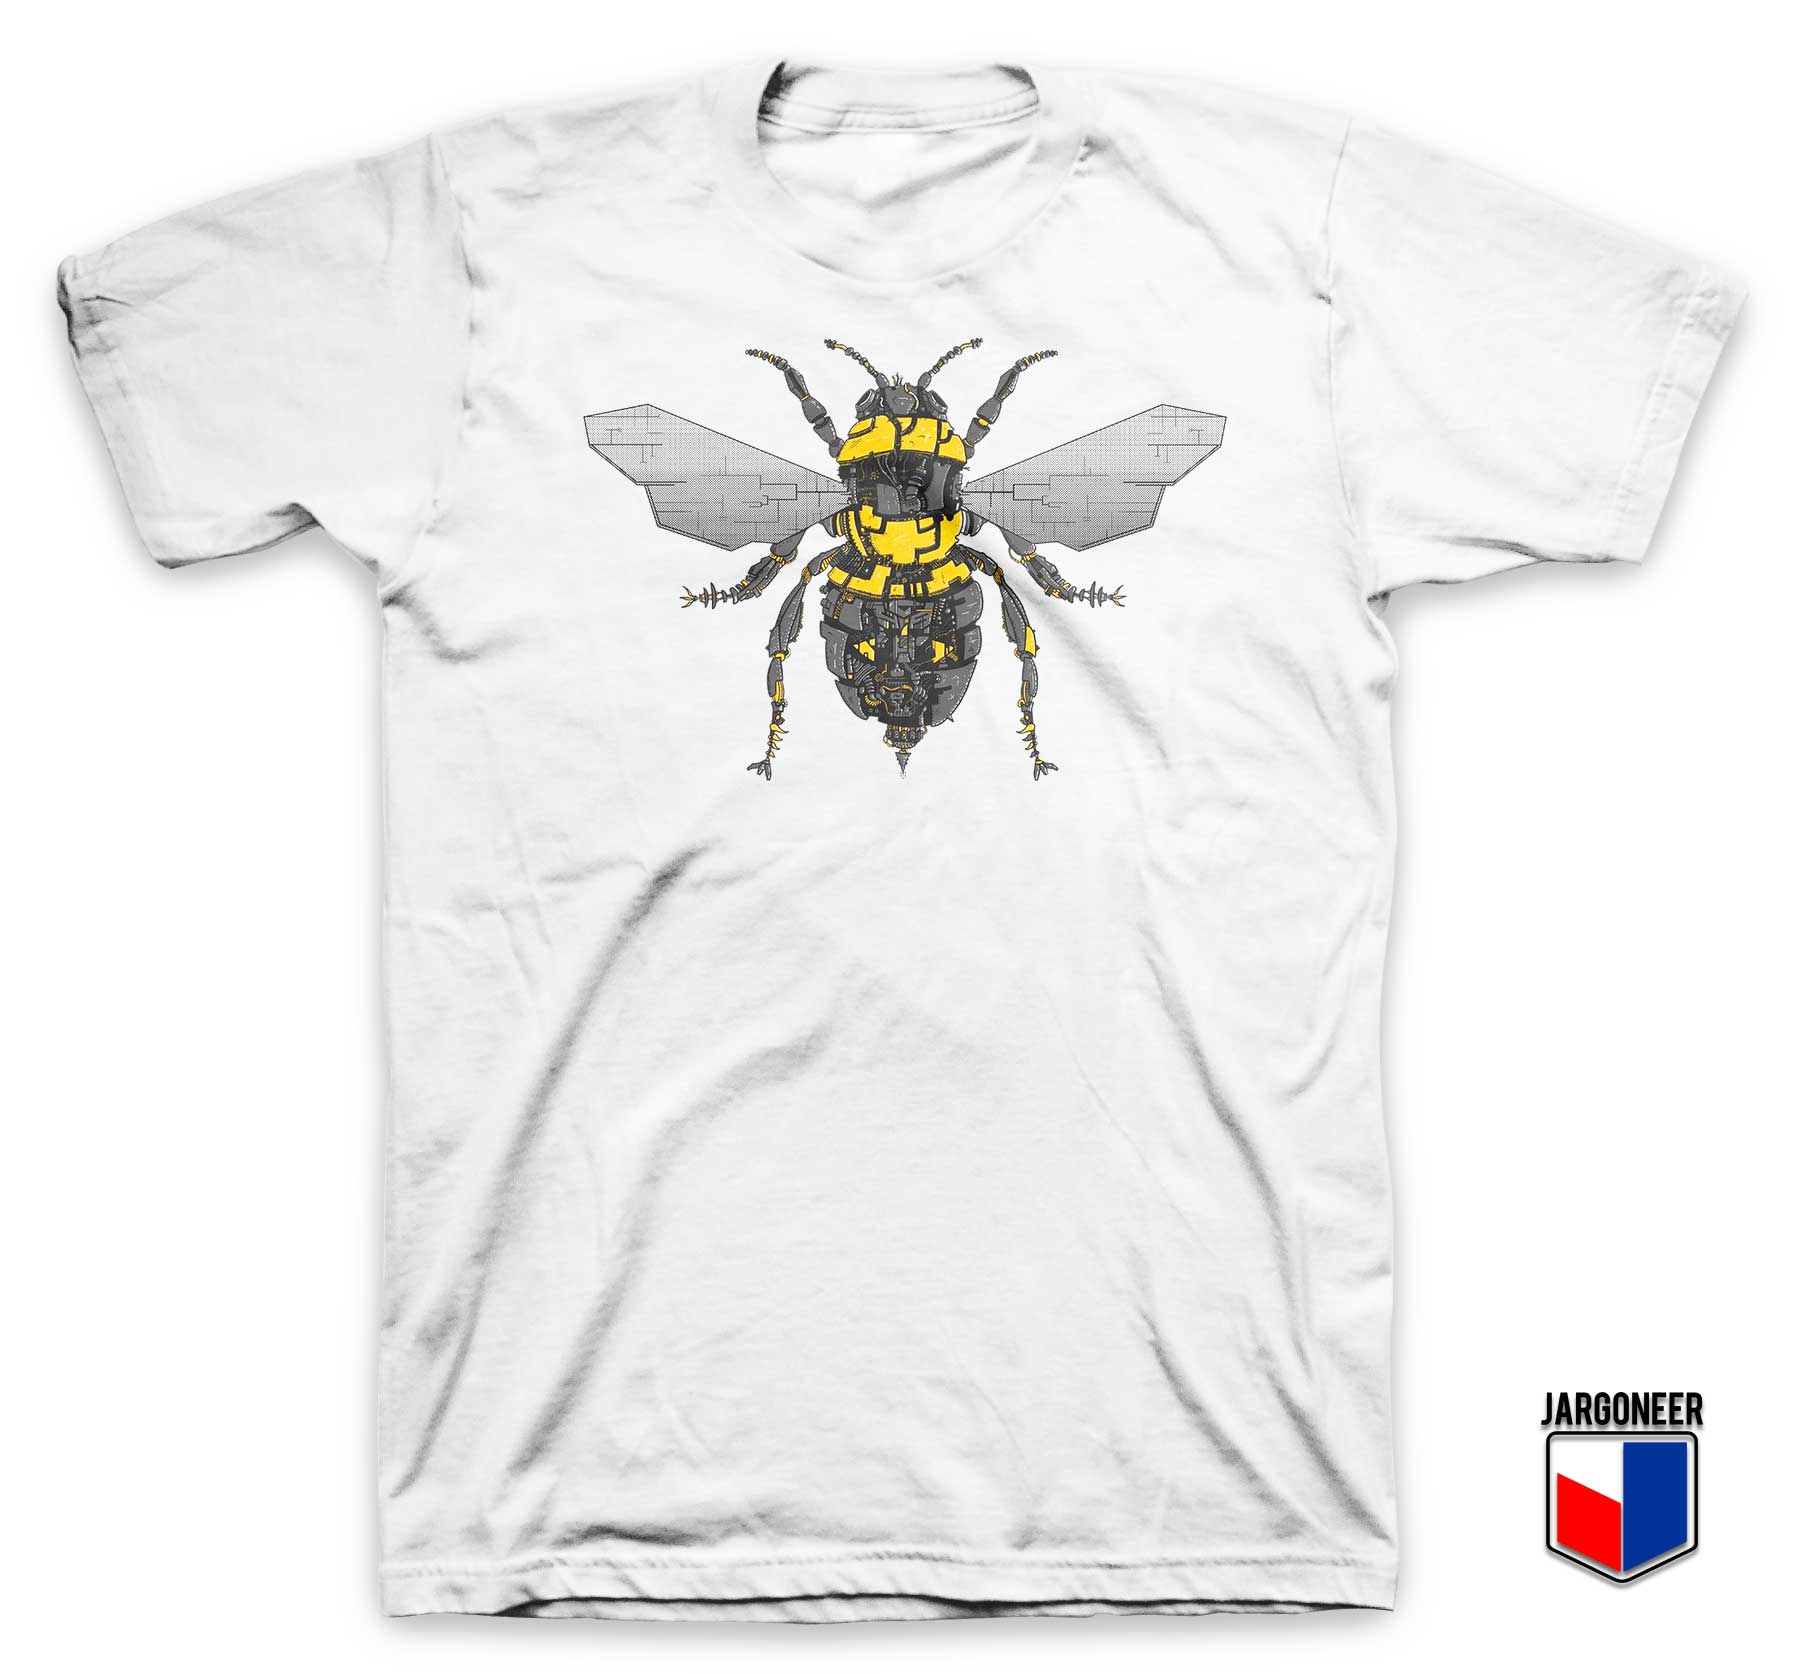 Bumblebee Parody T Shirt - Shop Unique Graphic Cool Shirt Designs